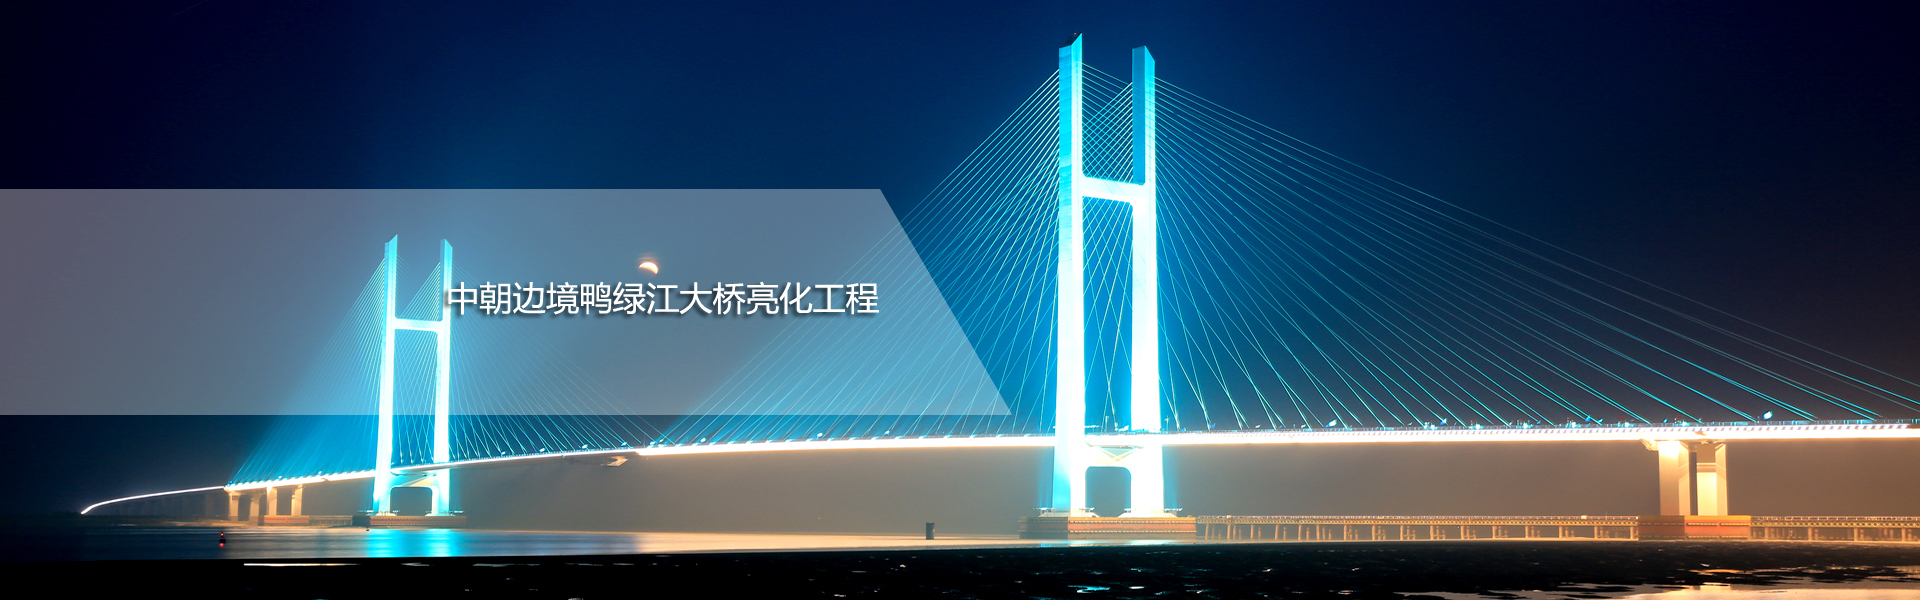 中朝边境鸭绿江大桥亮化工程